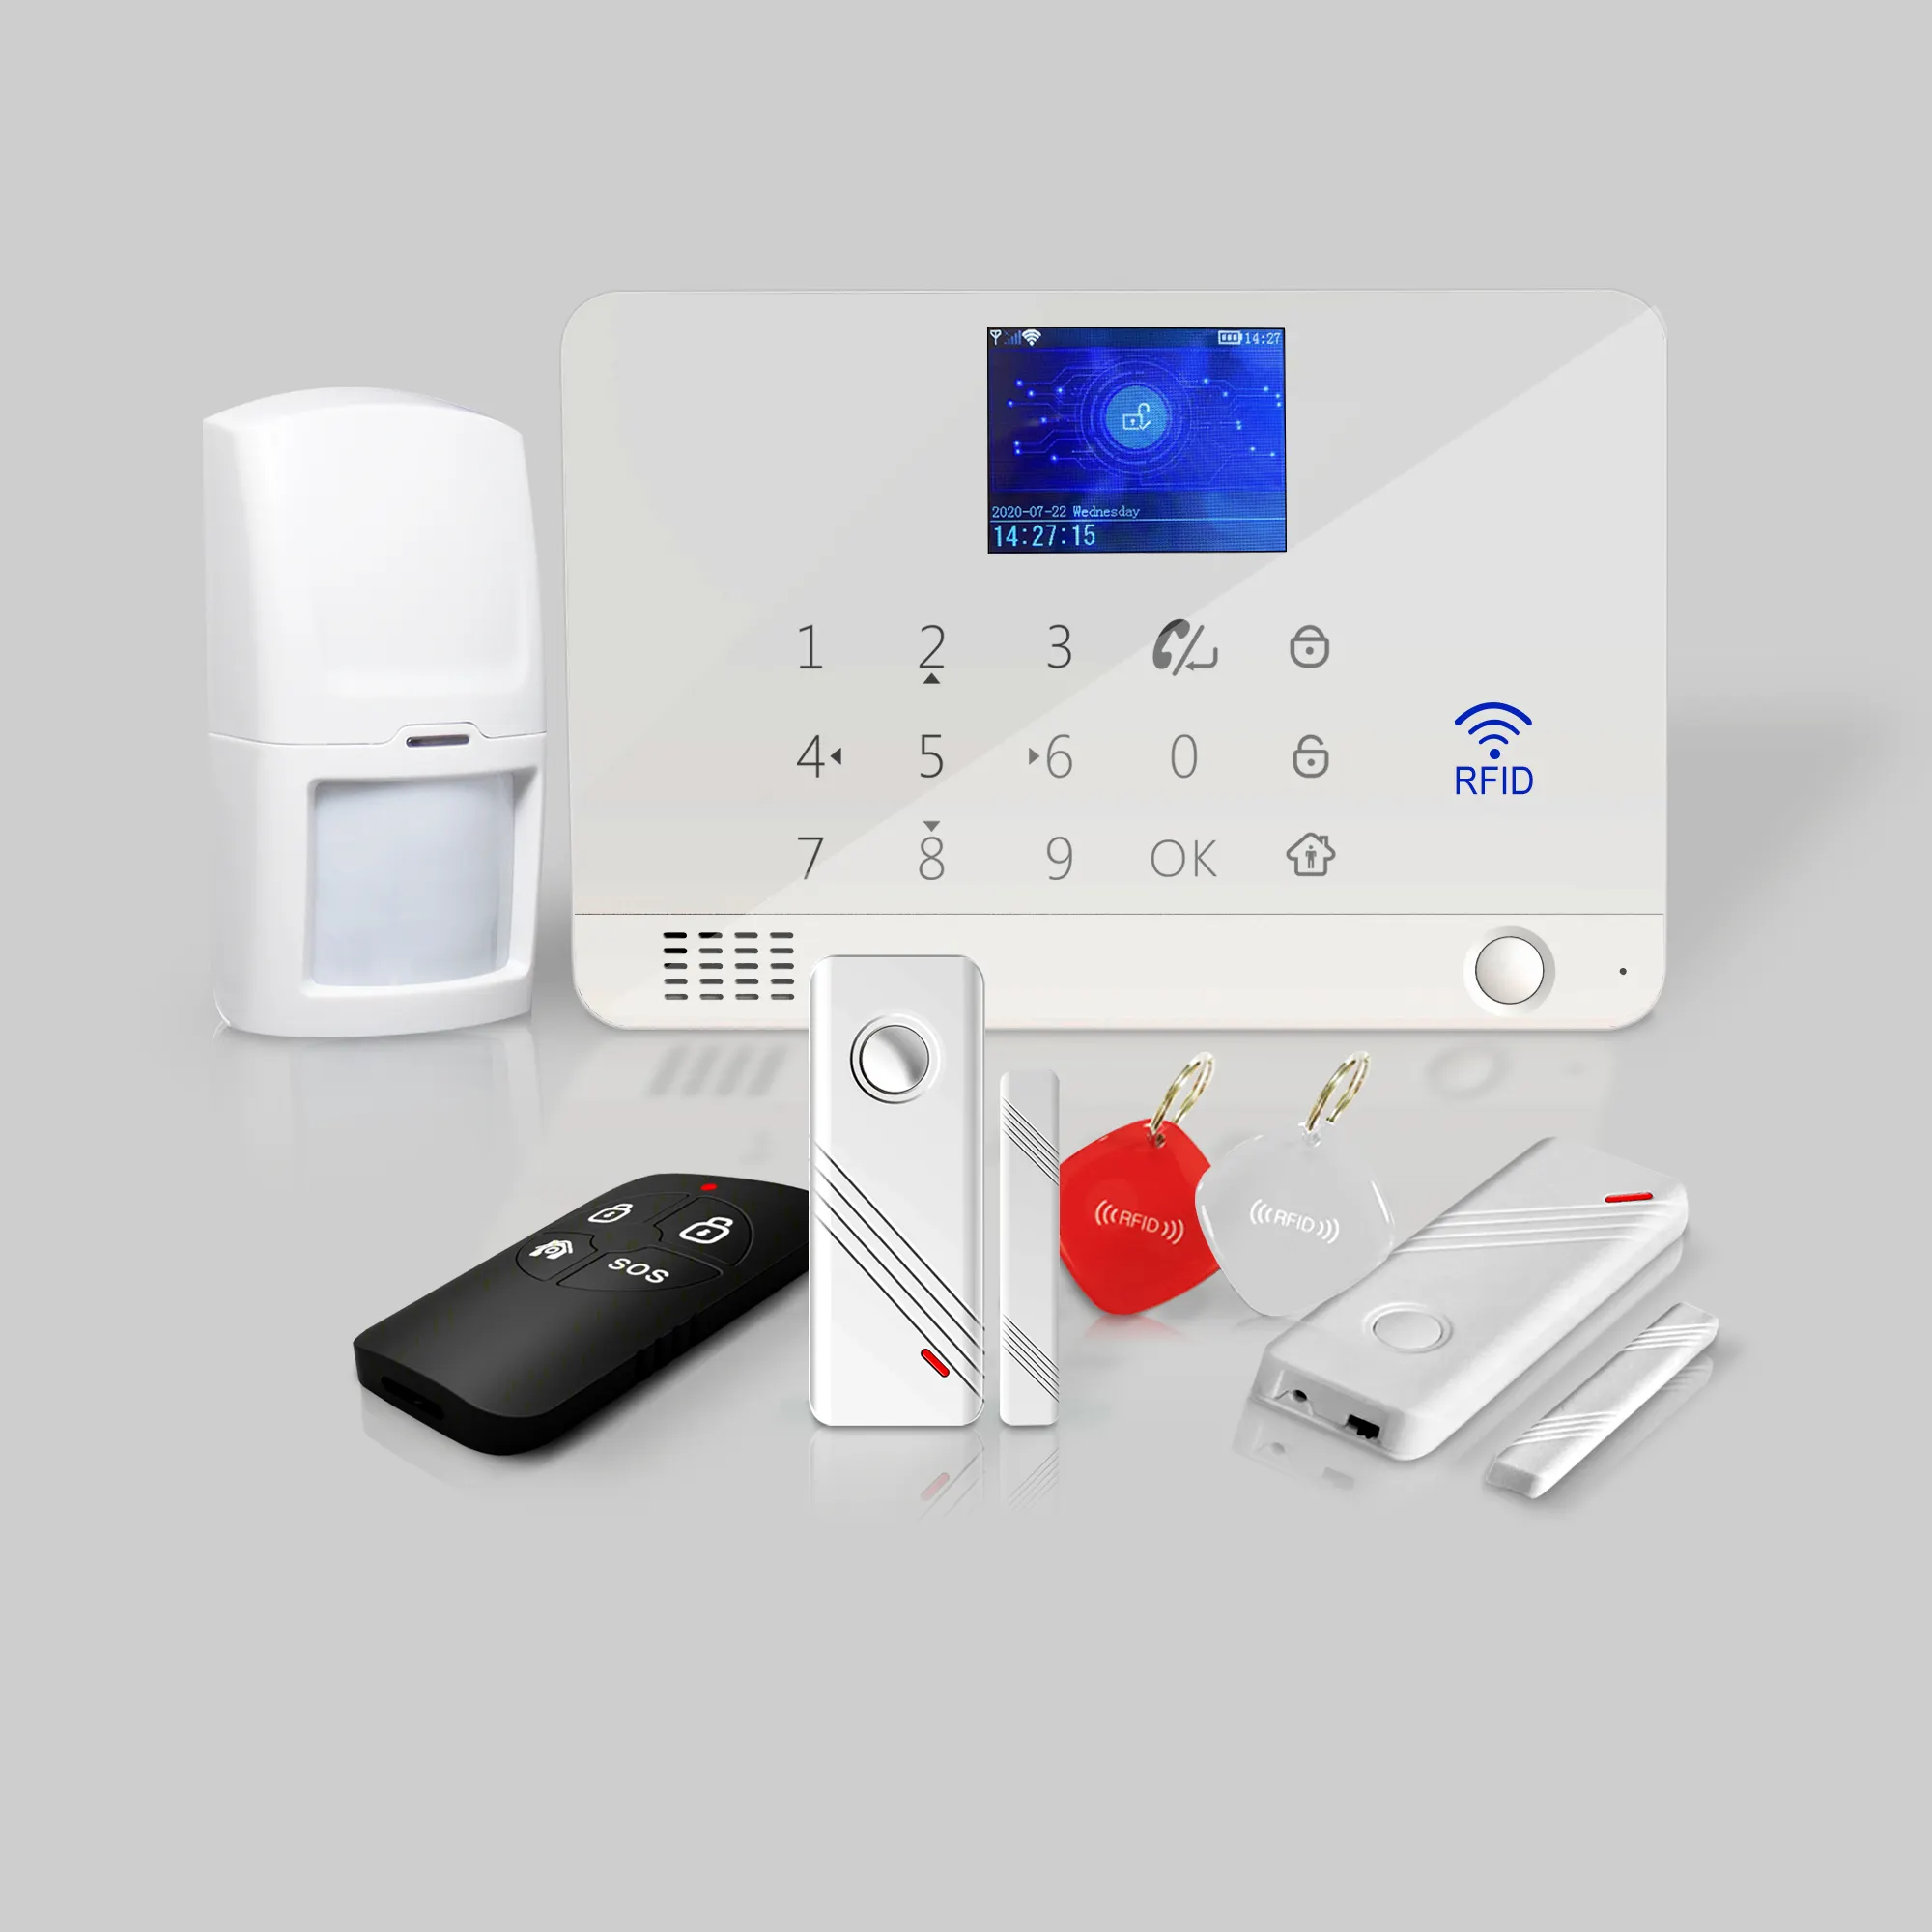 Tuya sistem alarm keamanan Wifi dan Gsm untuk rumah dan bisnis mendukung Sensor Rf433 dan Sensor berkabel